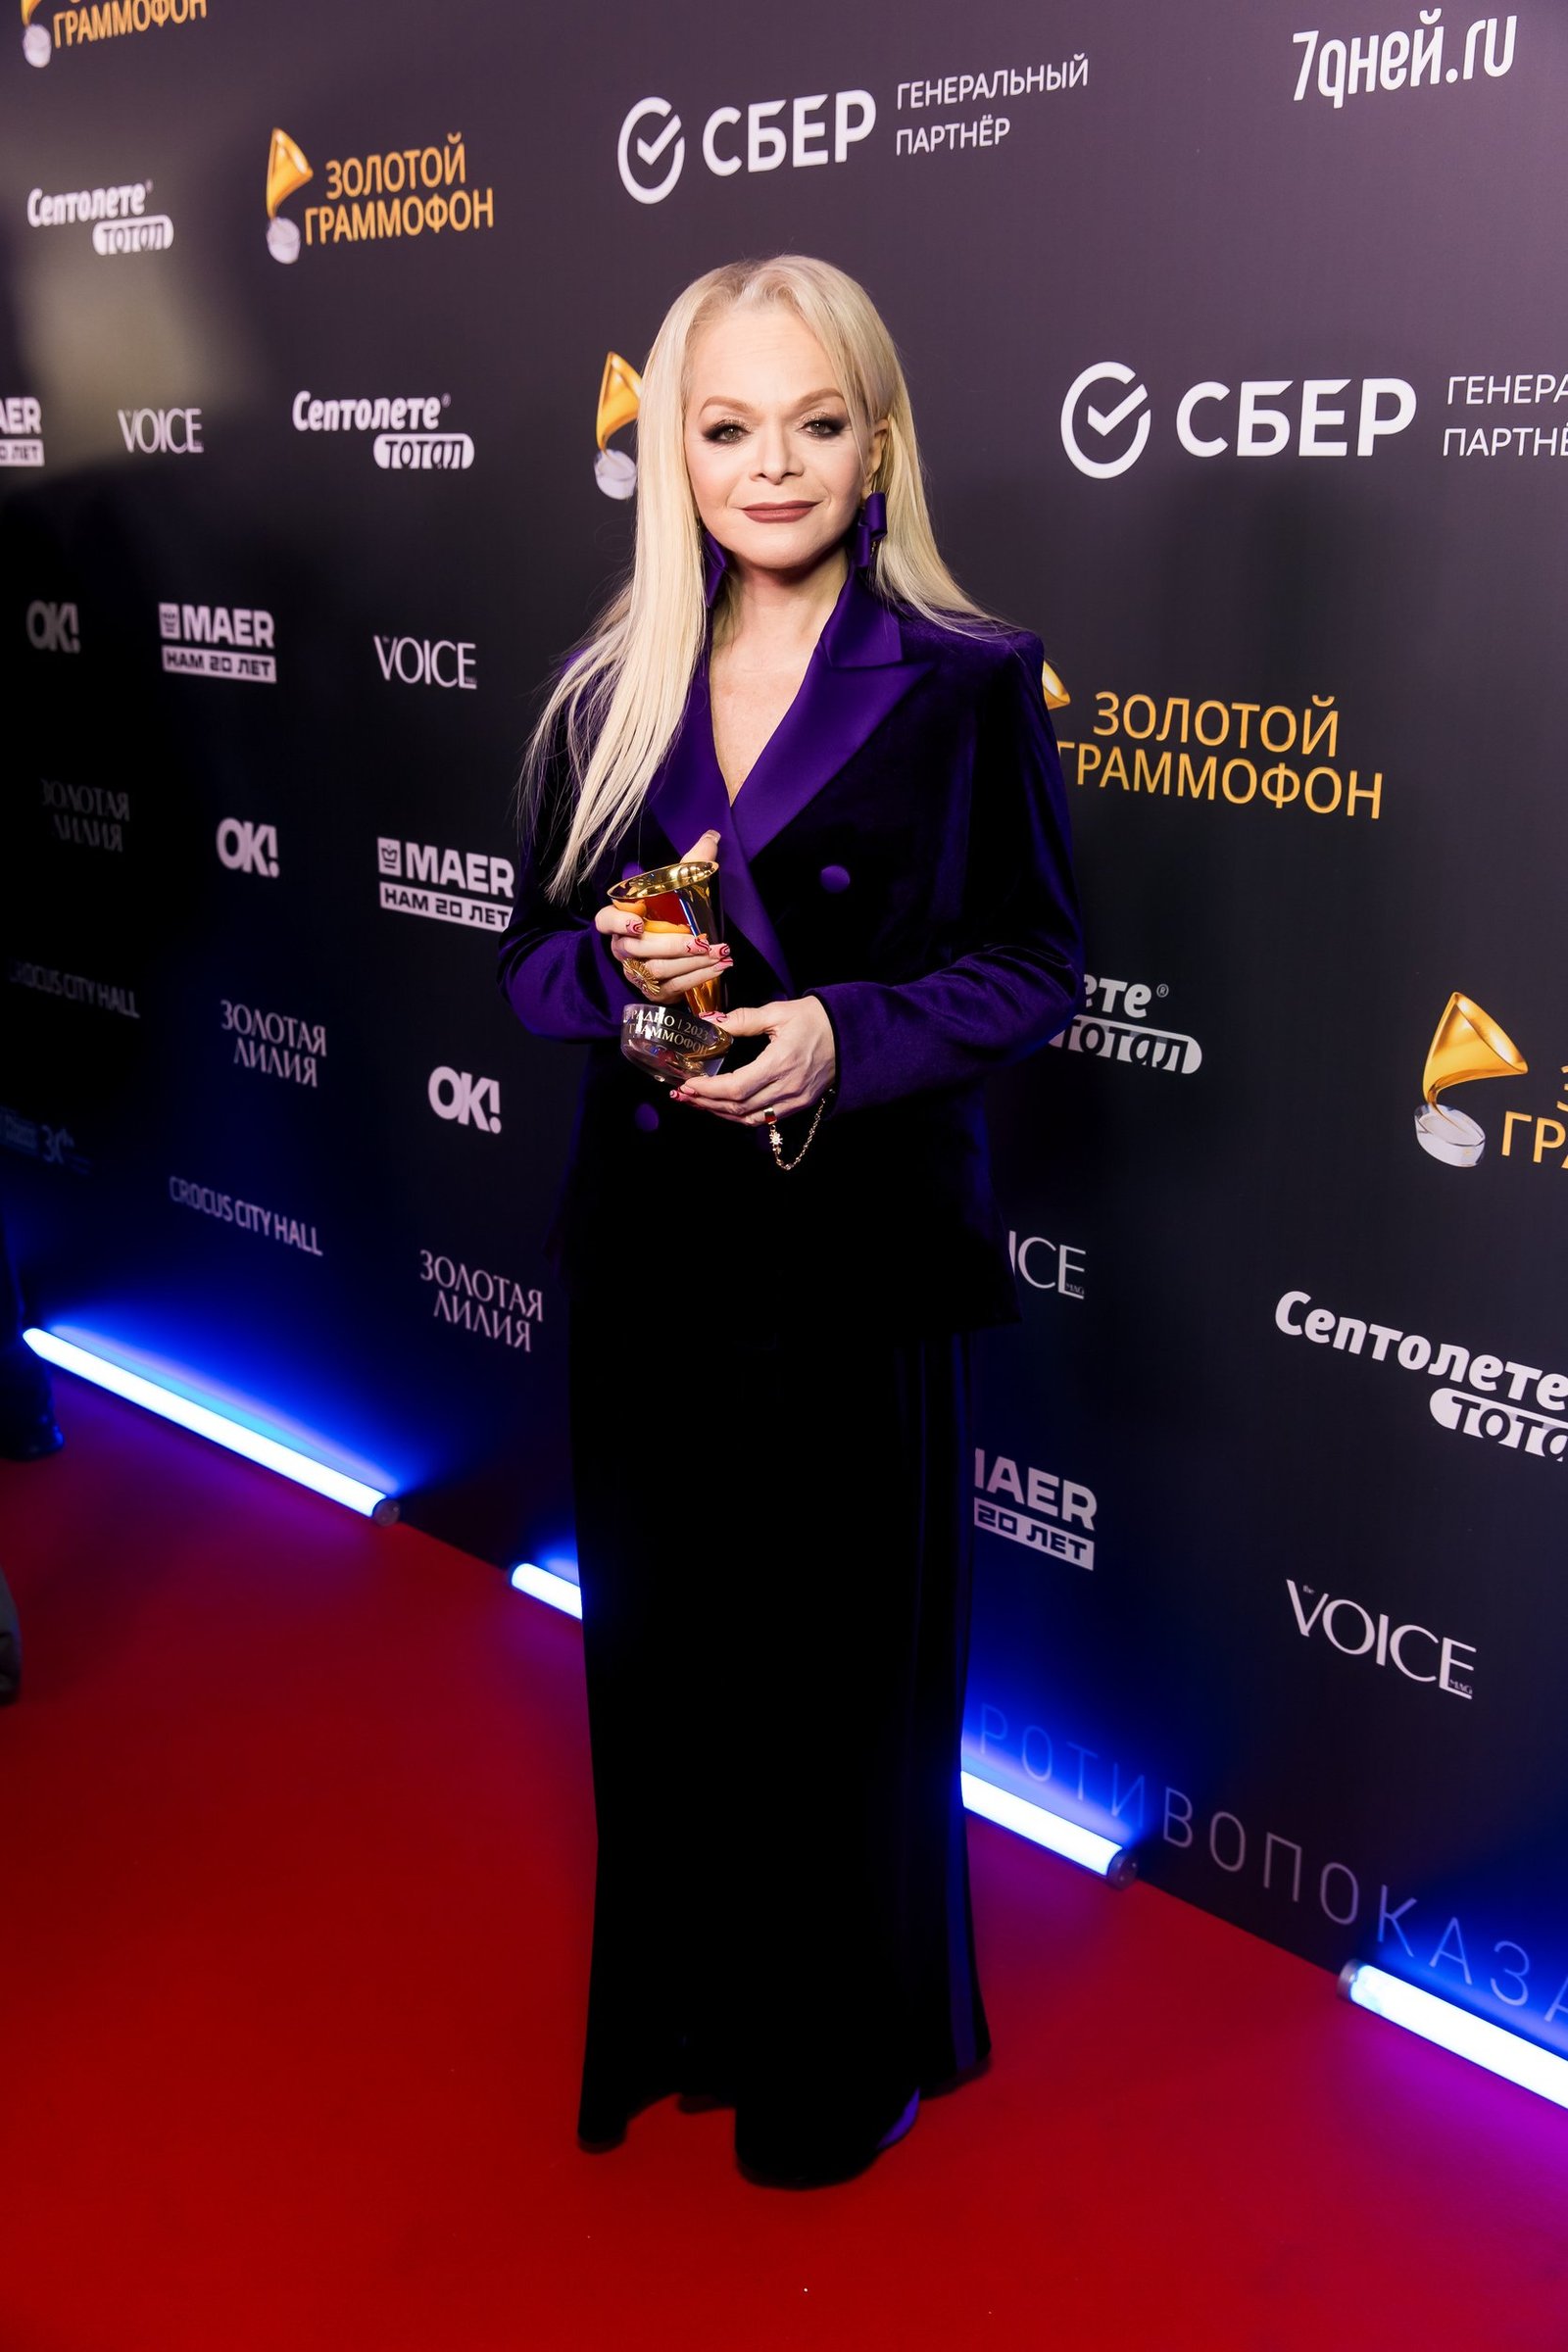 Выездной бар на премии «Золотой Граммофон» в Москве